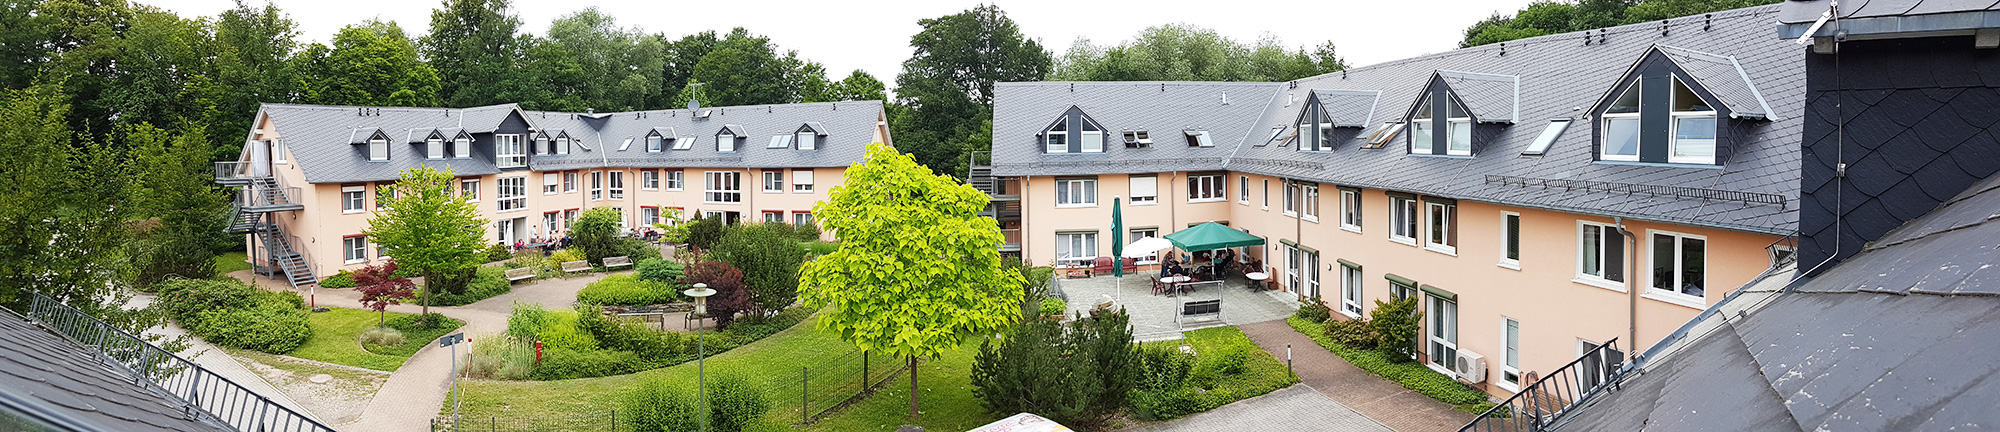 Foto: Wohnstätte Syratal in Kauschwitz